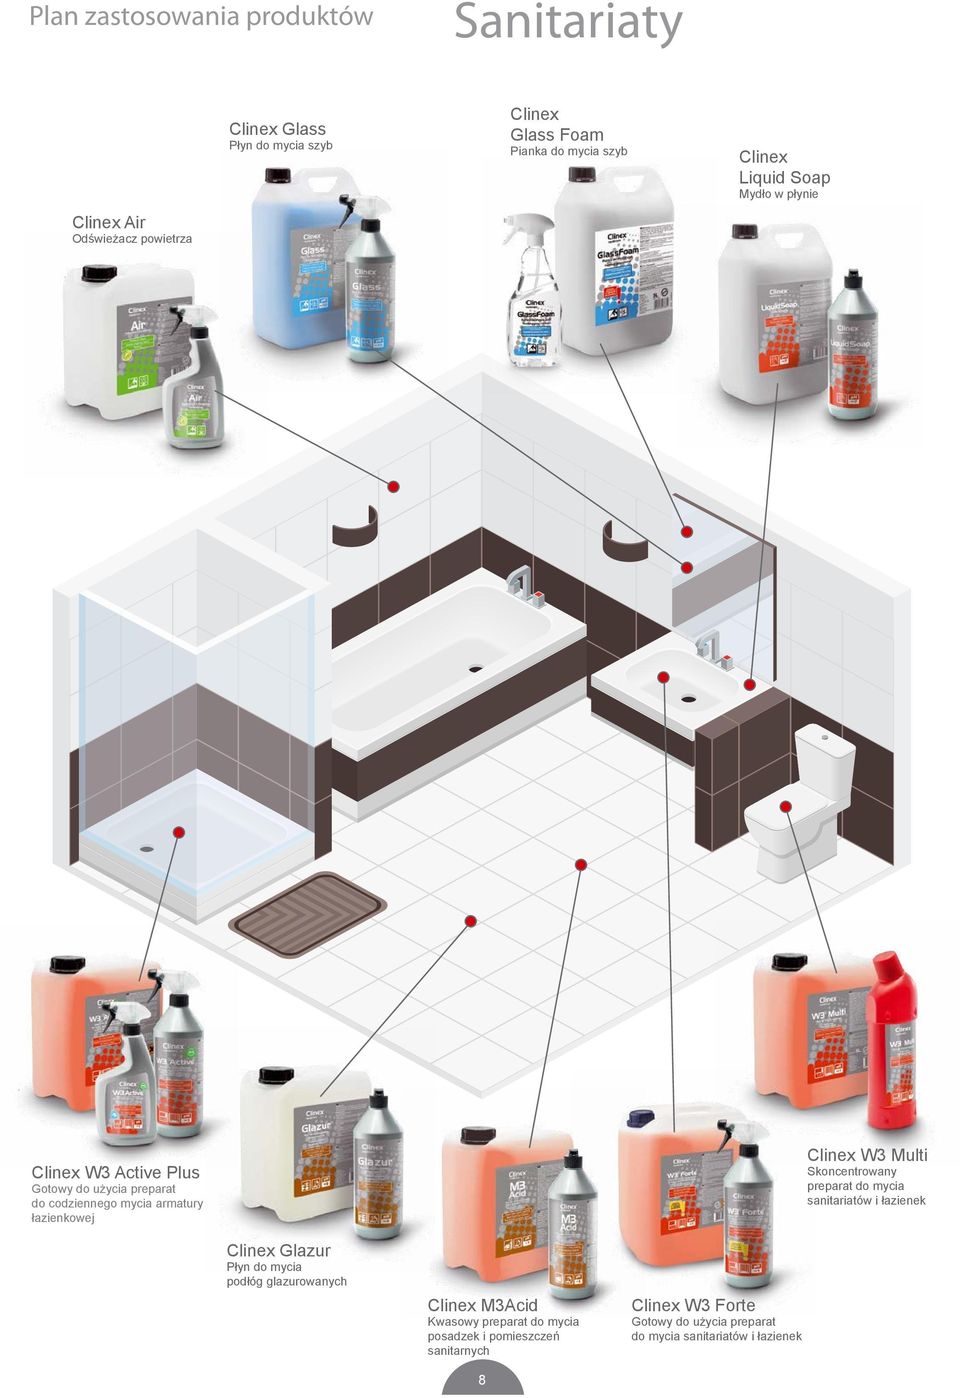 Multi Skoncentrowany preparat do mycia sanitariatów i łazienek Glazur Płyn do mycia podłóg glazurowanych M3Acid Kwasowy